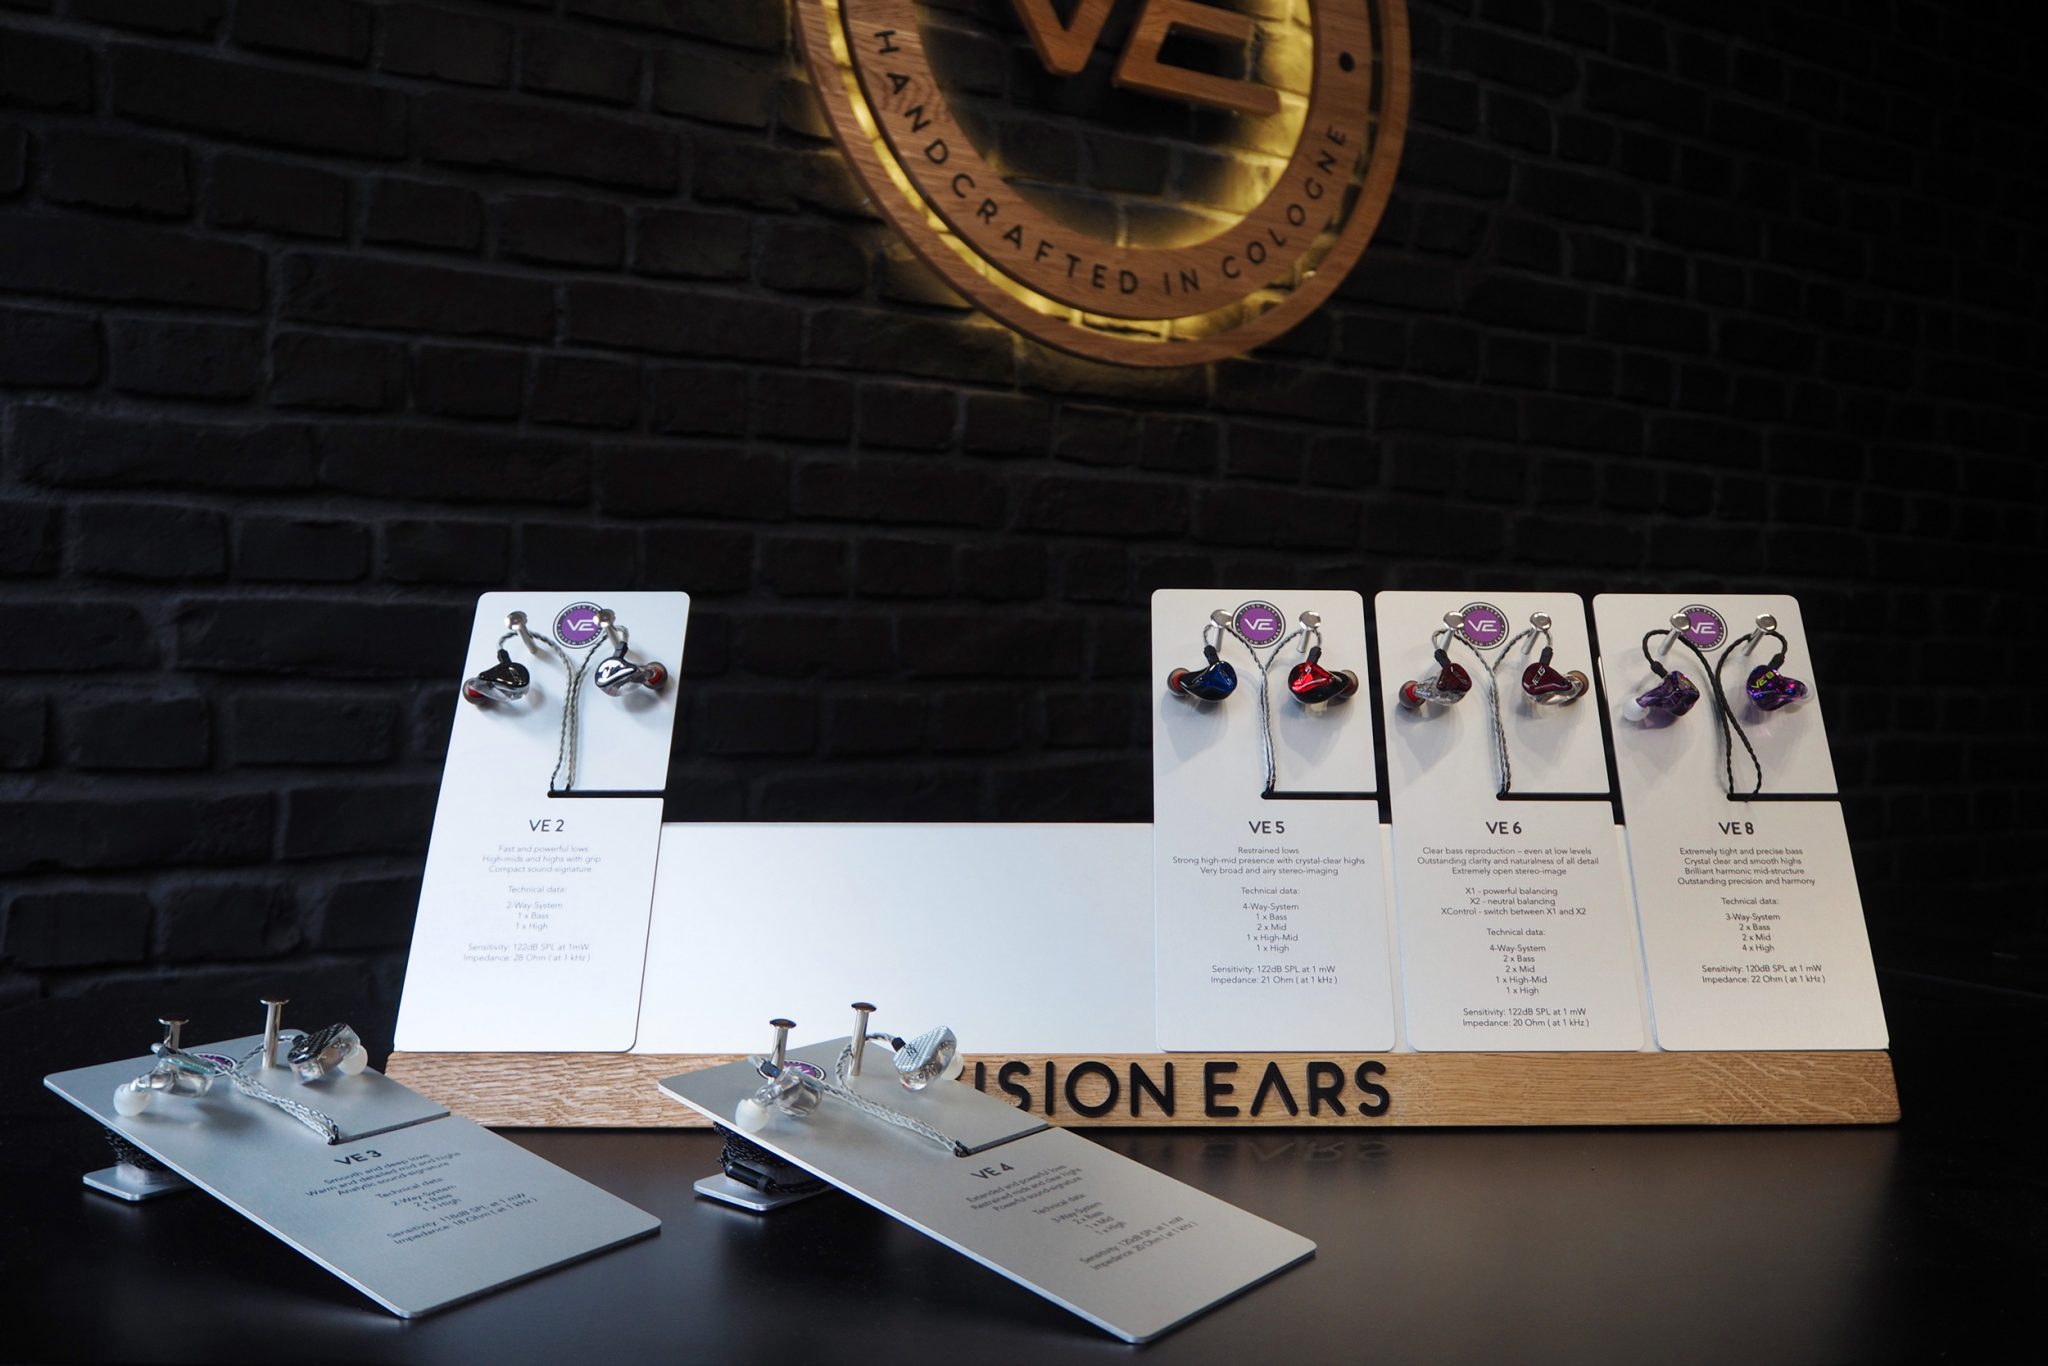 Vision Ears Product Display Design Stil Manipulation 2017